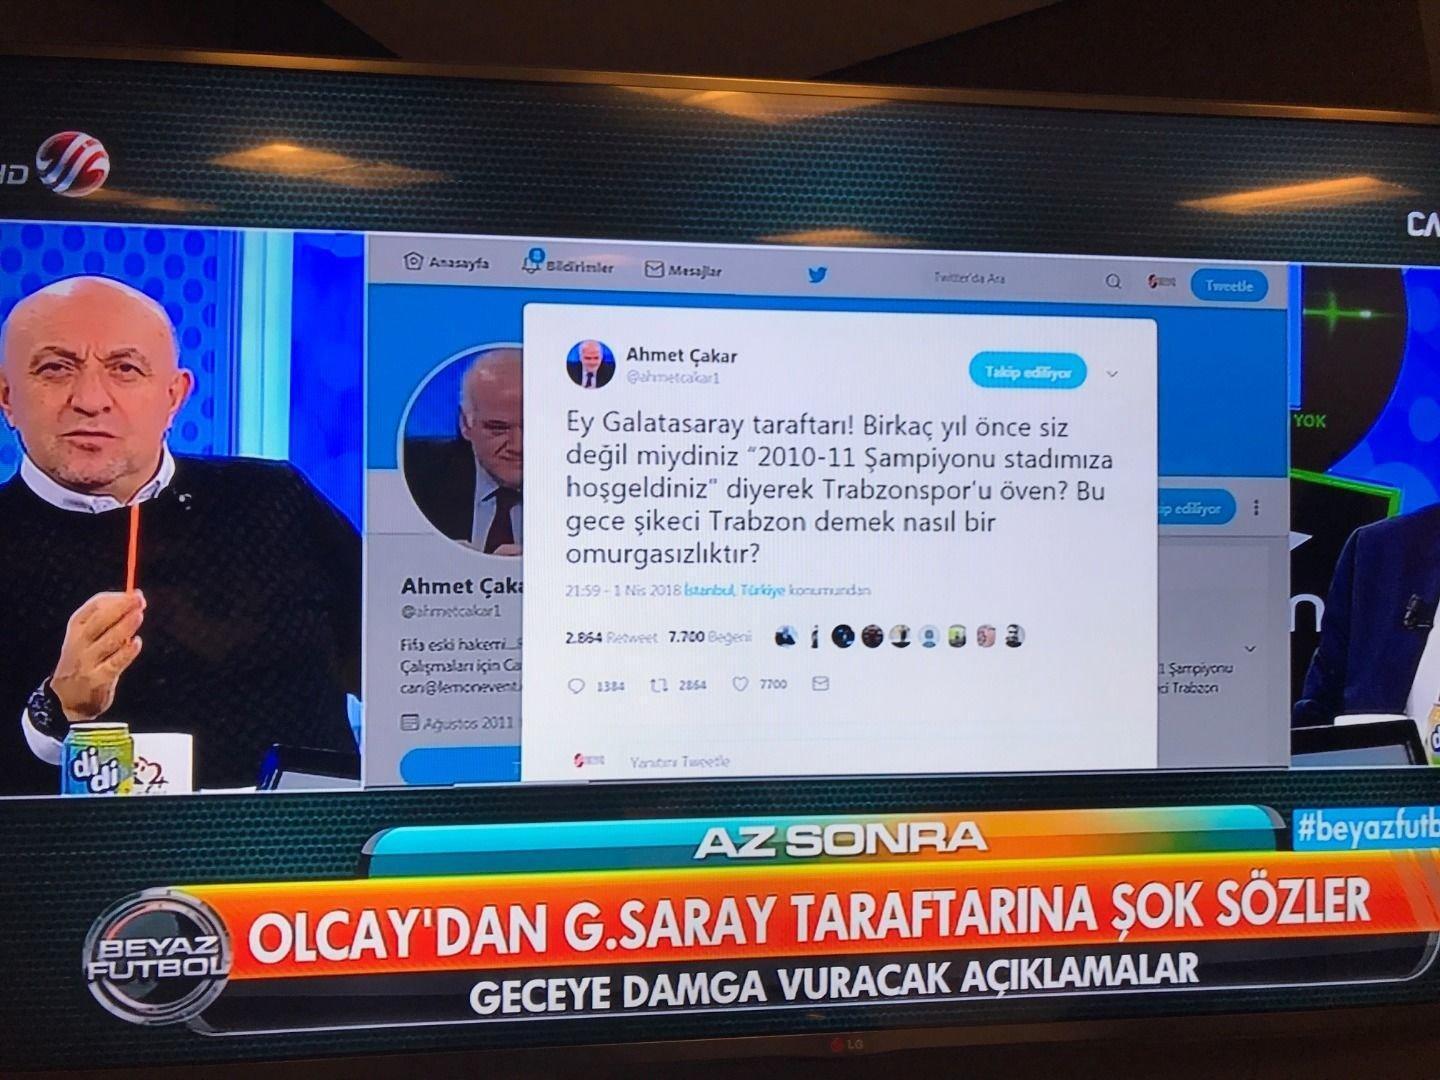 Ahmet Çakar: Galatasaray taraftarı... Siz omurgasızsınız